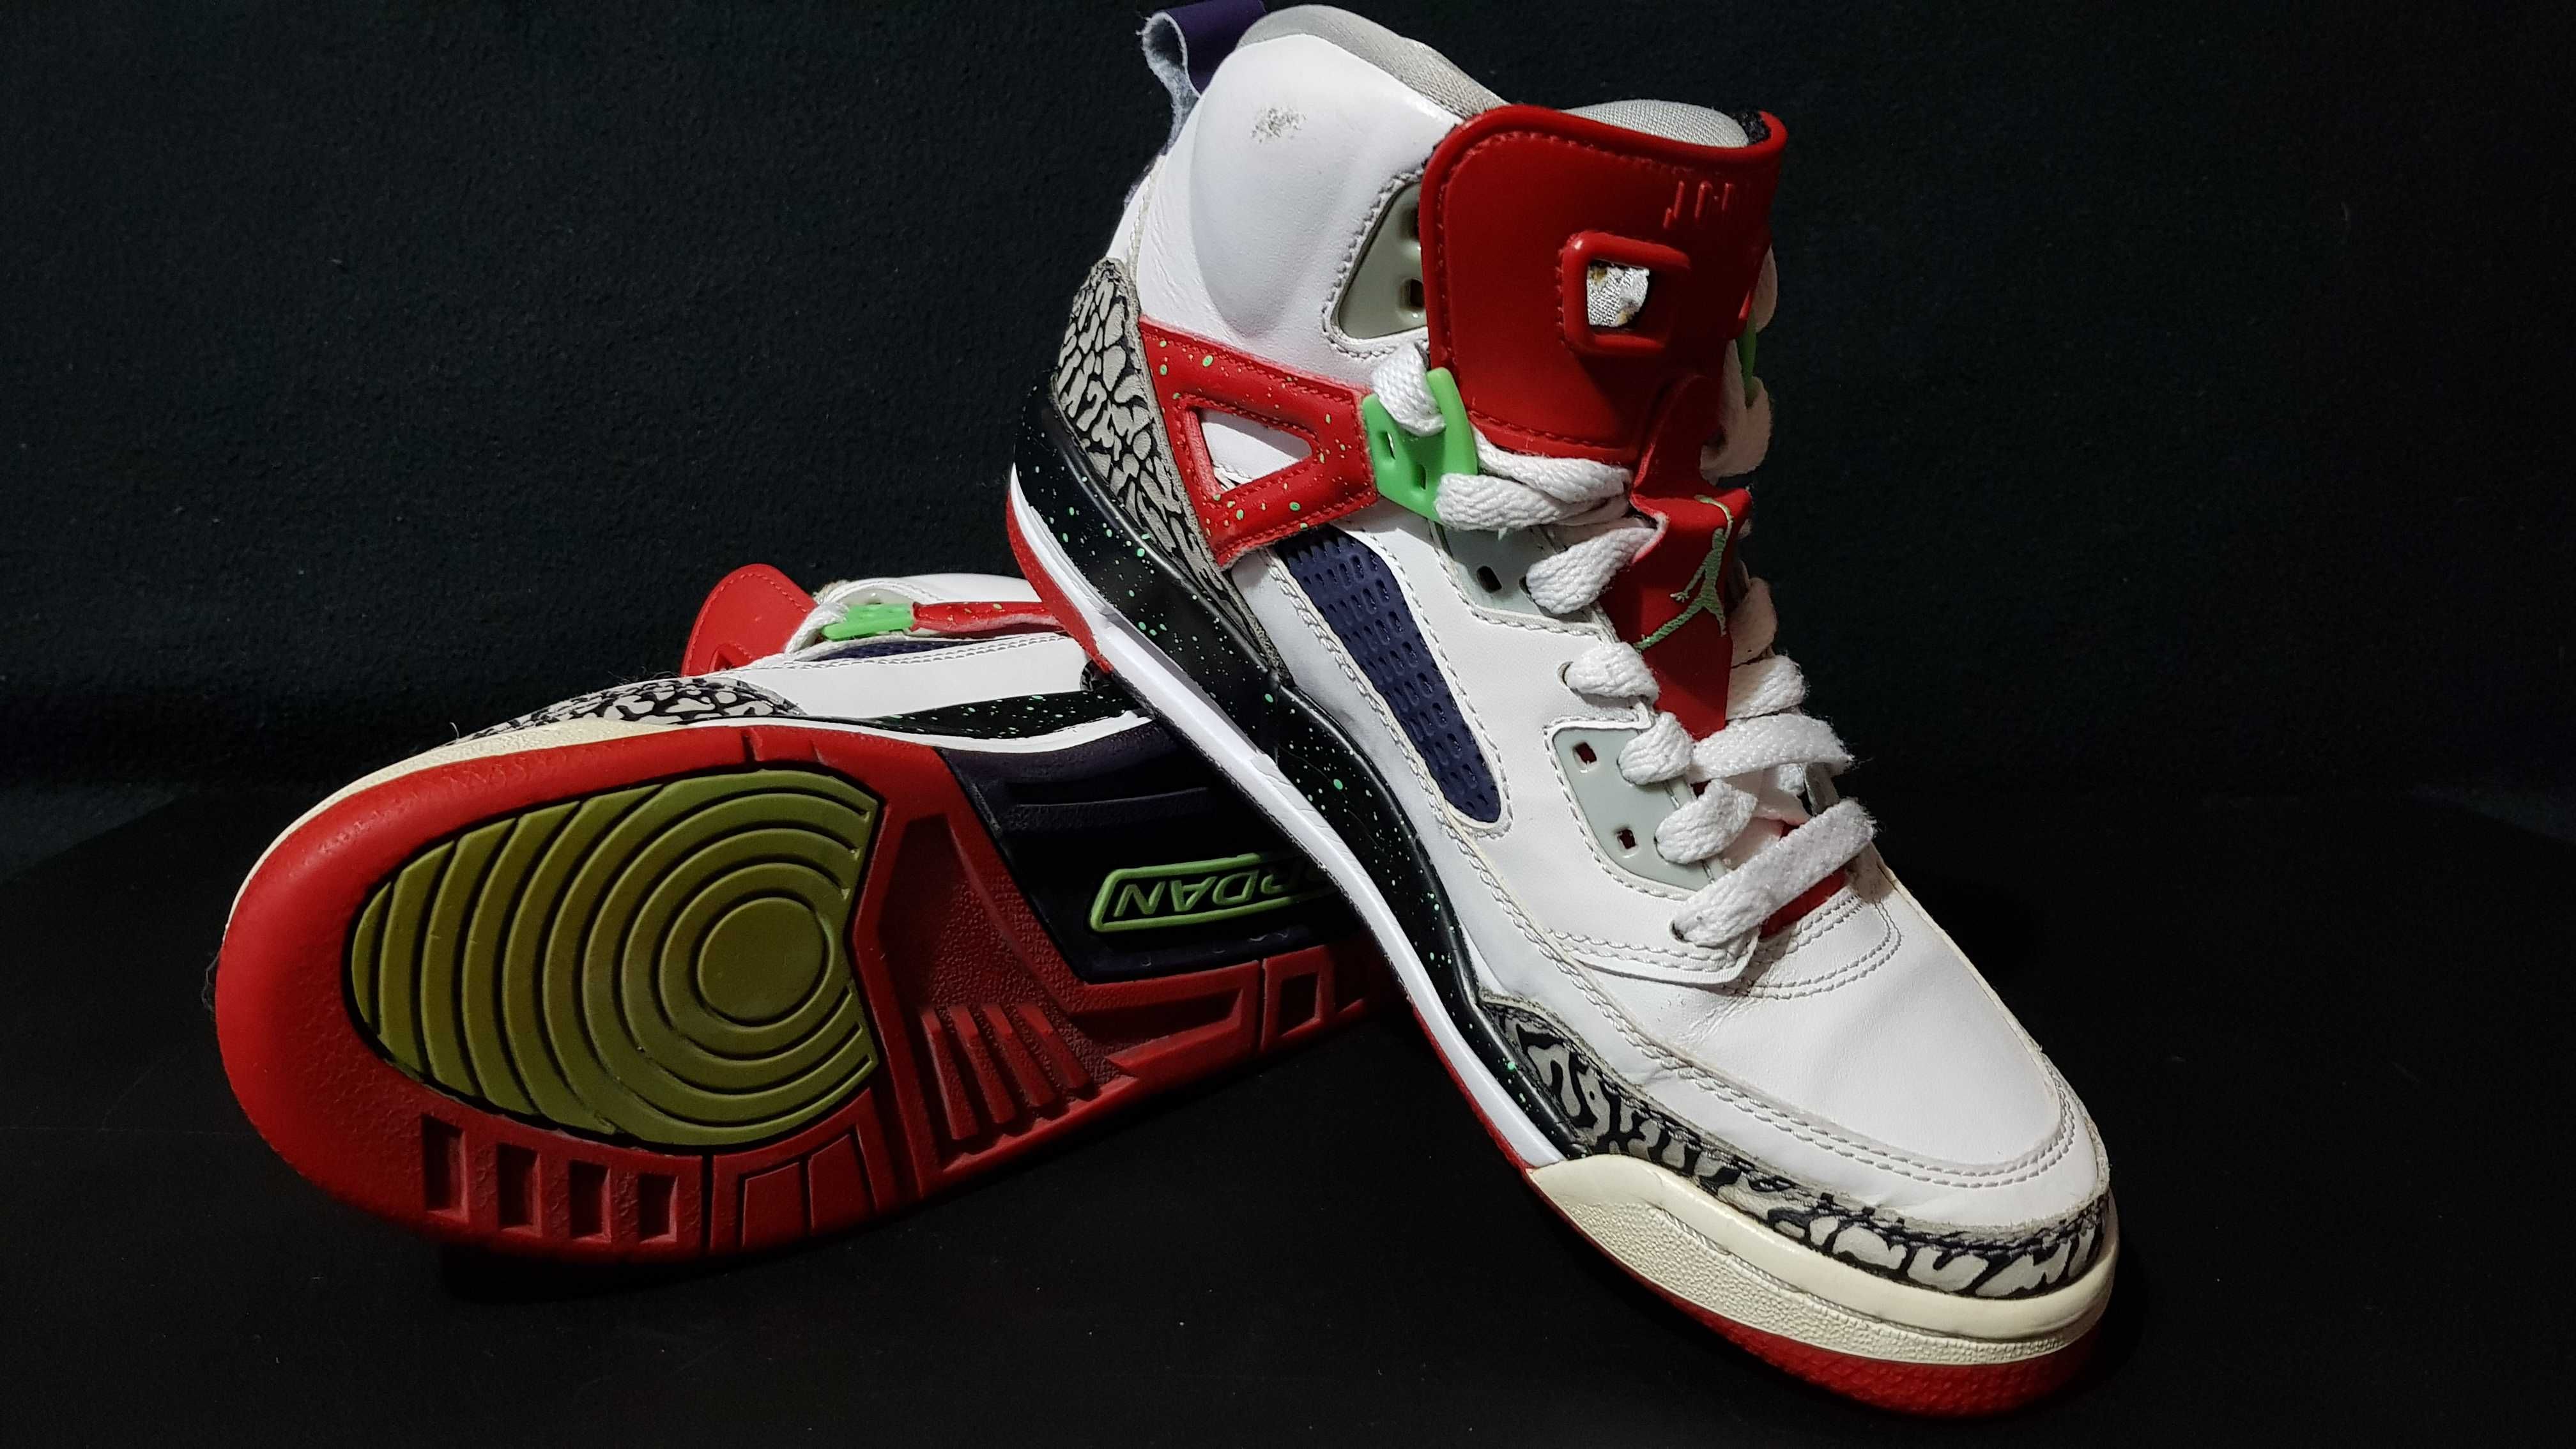 Nike Air Jordan Spizike (Spiz’ike) ‘Light Poison Green’ masura 37.5